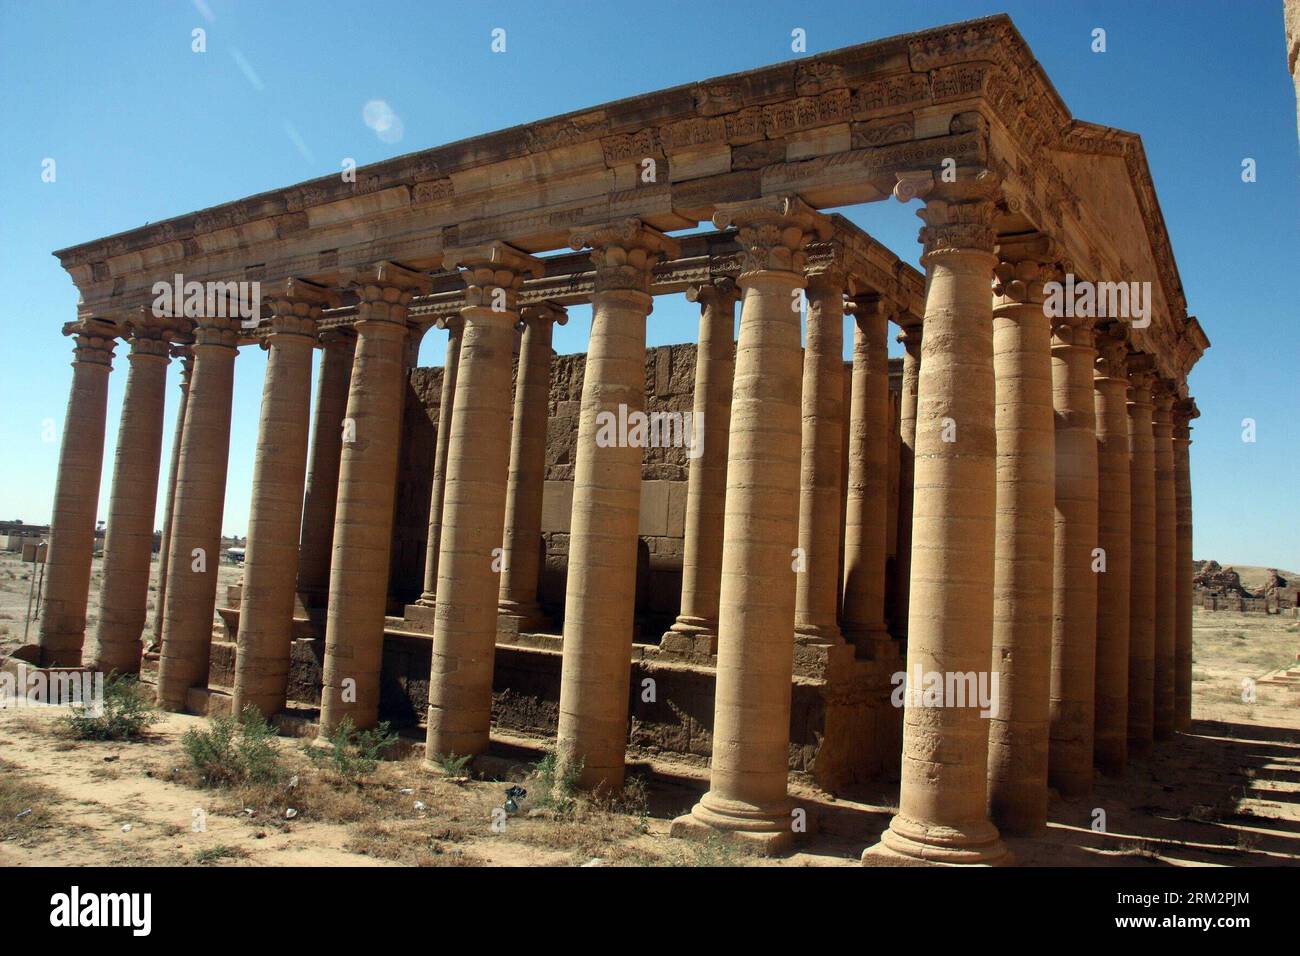 (130624) -- MOSUL (IRAK), 22. Juni 2013 (Xinhua) -- Foto aufgenommen am 22. Juni 2013 zeigt einen Teil der Überreste von Hatra, einer antiken Stadt 110 Kilometer südwestlich von Mosul, Irak. Hatra, eine große befestigte Stadt unter dem Einfluss des parthischen Reiches und Hauptstadt des ersten arabischen Reiches, trotzte den Invasionen der Römer in den Jahren 116 und 198 dank seiner hohen, dicken Mauern, die durch Türme verstärkt wurden. Die Überreste der Stadt, insbesondere die Tempel, in denen hellenistische und römische Architektur mit östlichen dekorativen Elementen verschmolzen sind, zeugen von der Größe ihrer Zivilisation. Sie wurde in die Liste der UN aufgenommen Stockfoto